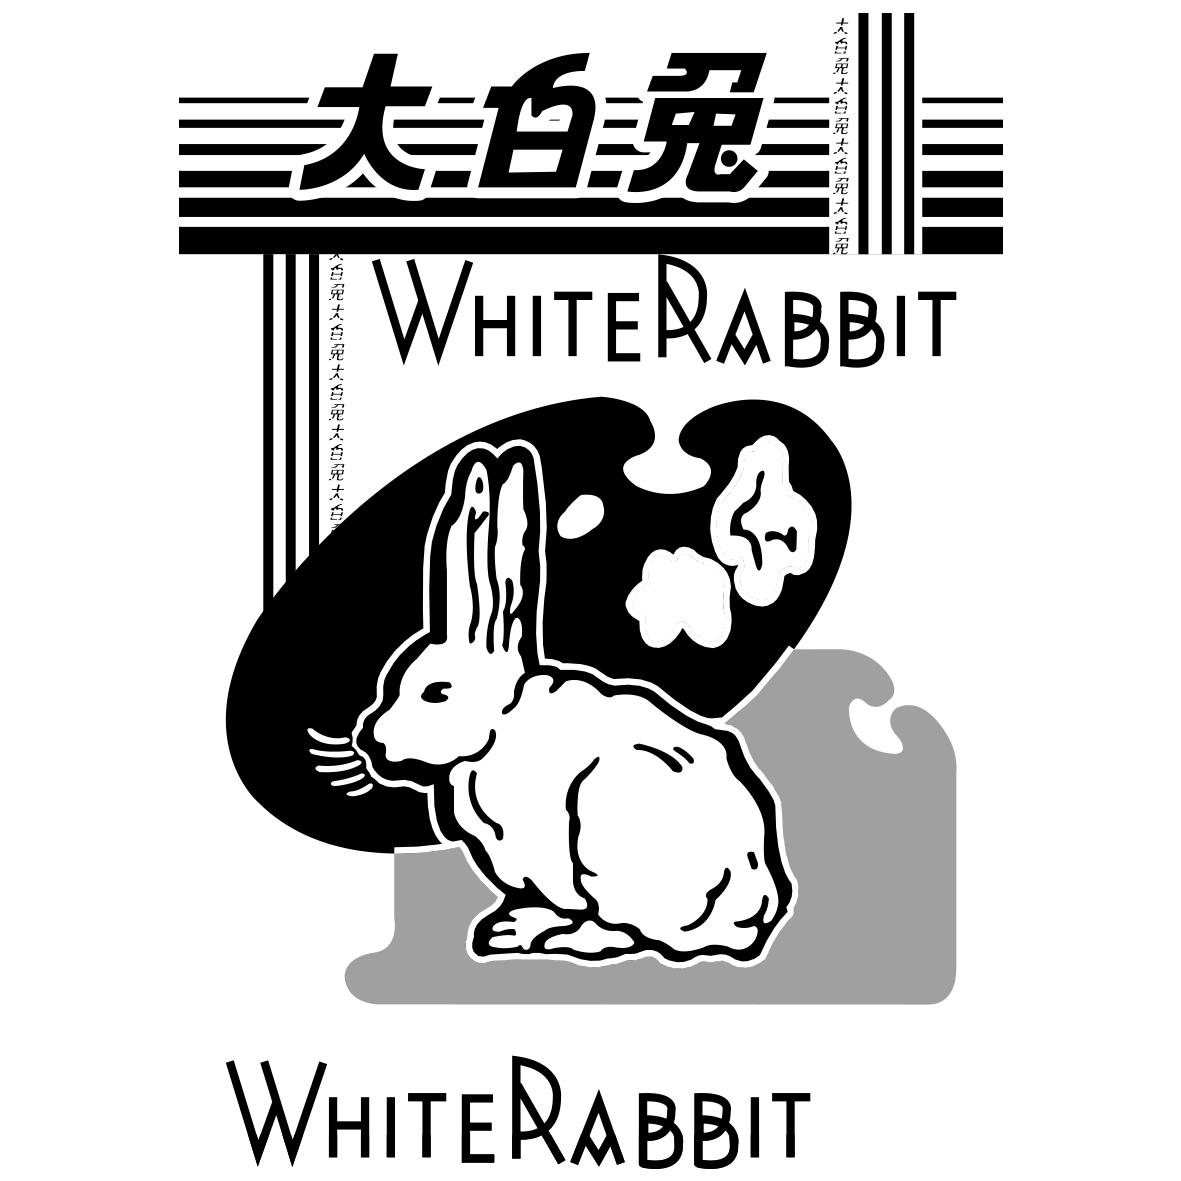 大白兔 whiterabbit 商标公告